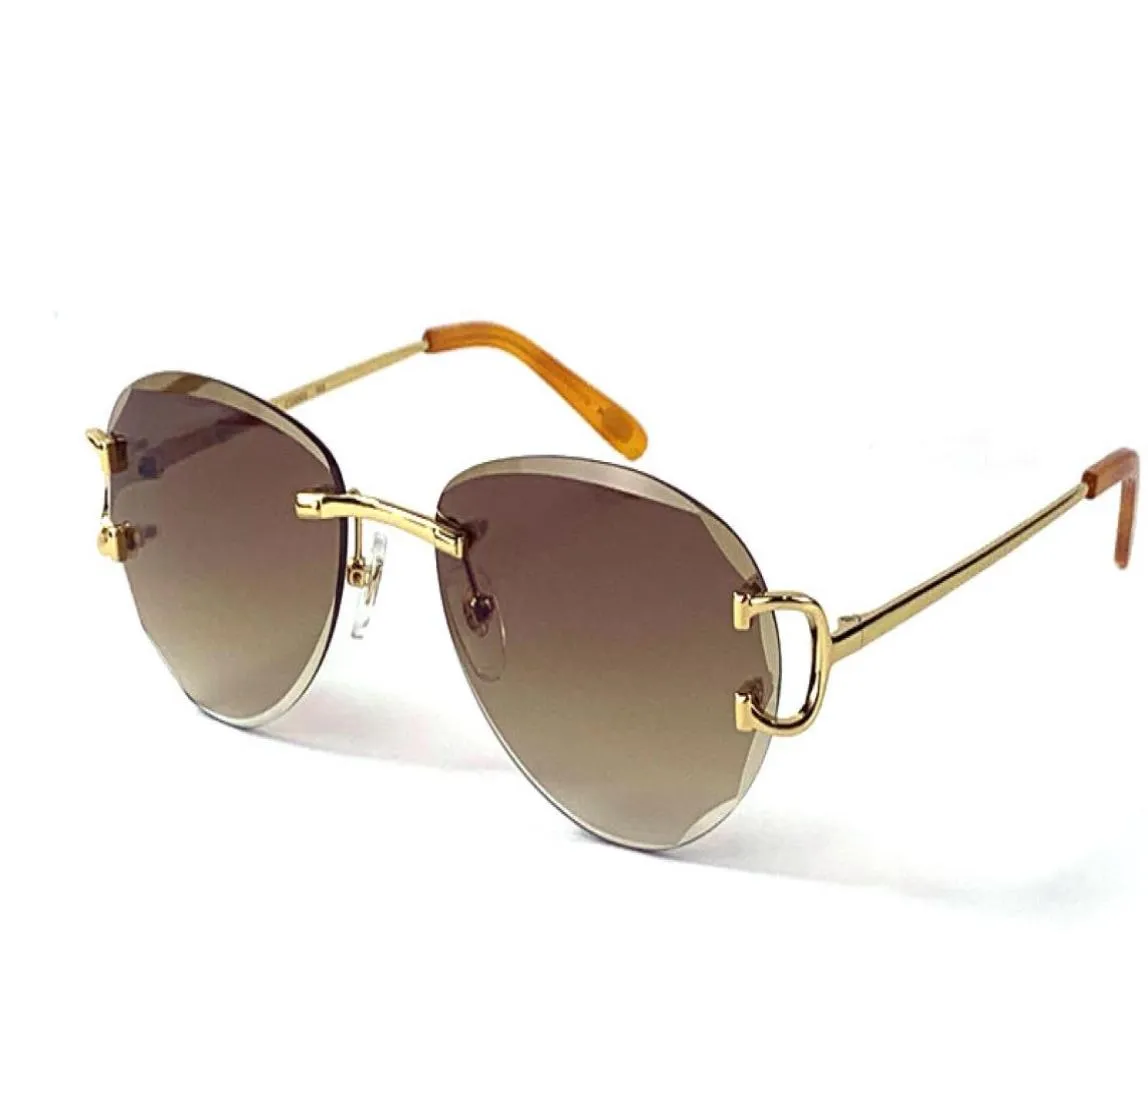 Solglasögon Vintage 0092 Män och kvinnor Designar Rimless Pilot Form Retro Glasögon Utsökta Cut Lens UV 400 Eyewear Gold Light Color 6305343